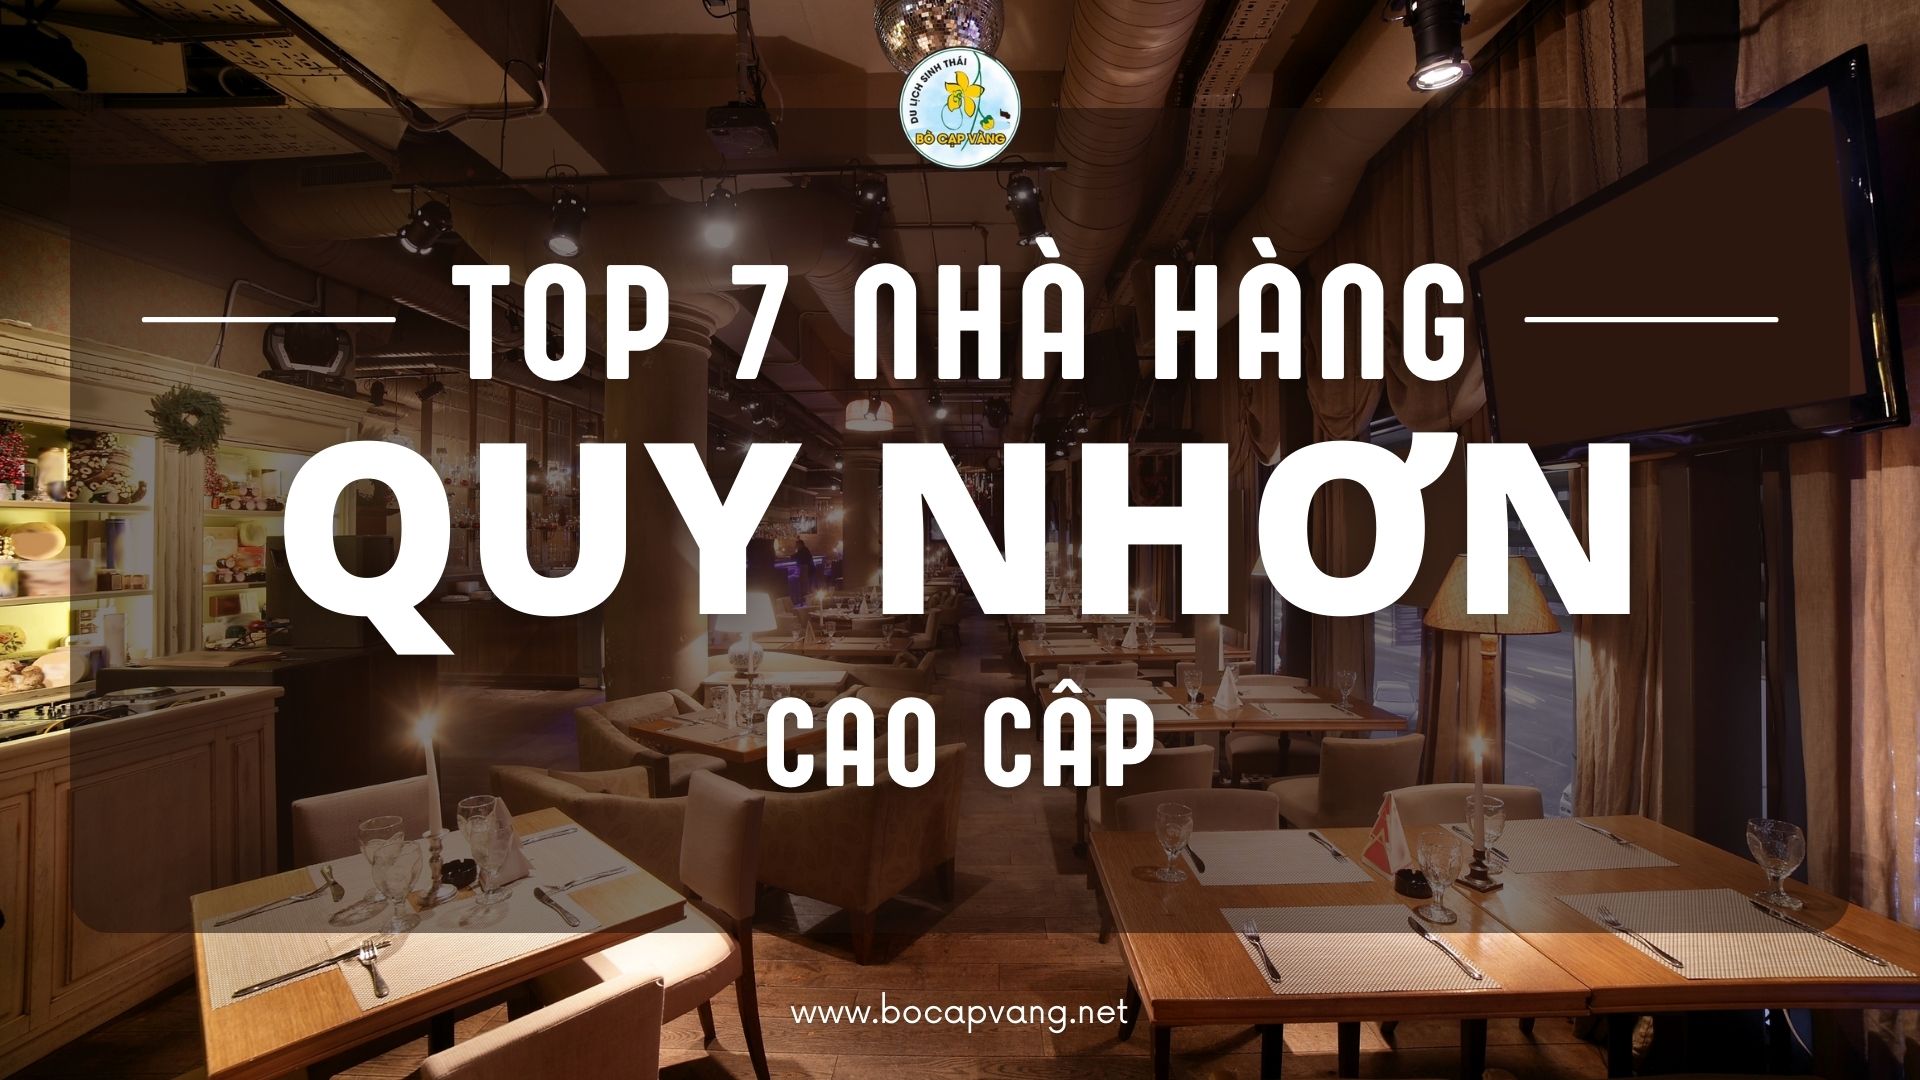 Top 7 nhà hàng ở Quy Nhơn cao cấp với view siêu đẹp